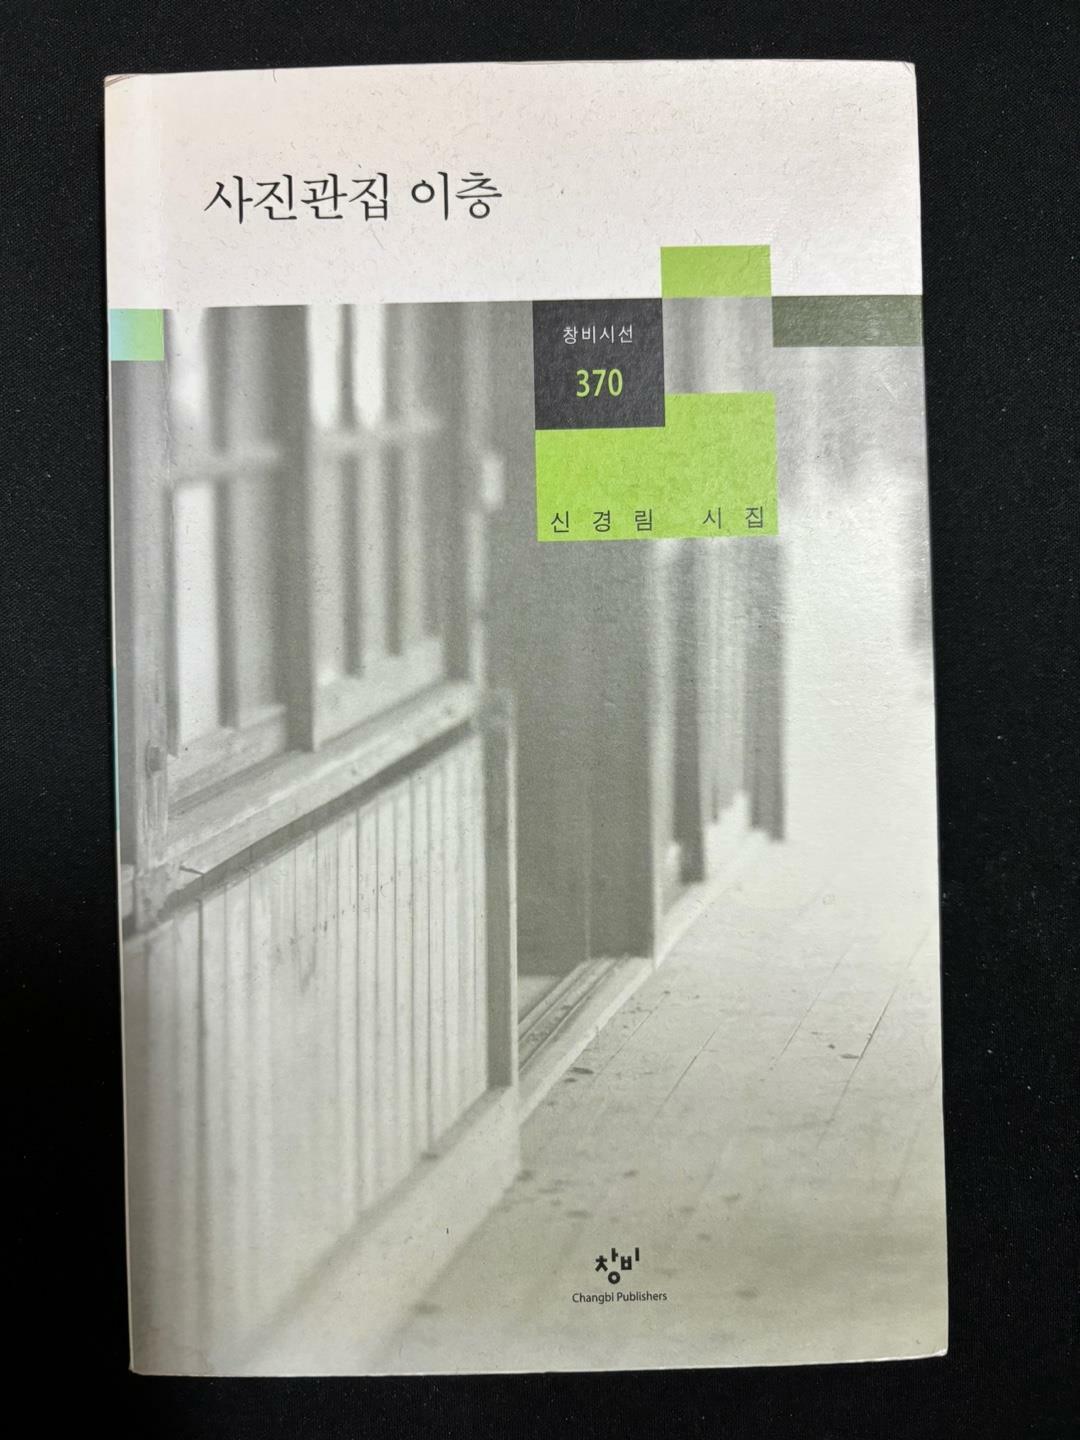 [중고] 사진관집 이층 -신경림 2014년 초판(저자서명)